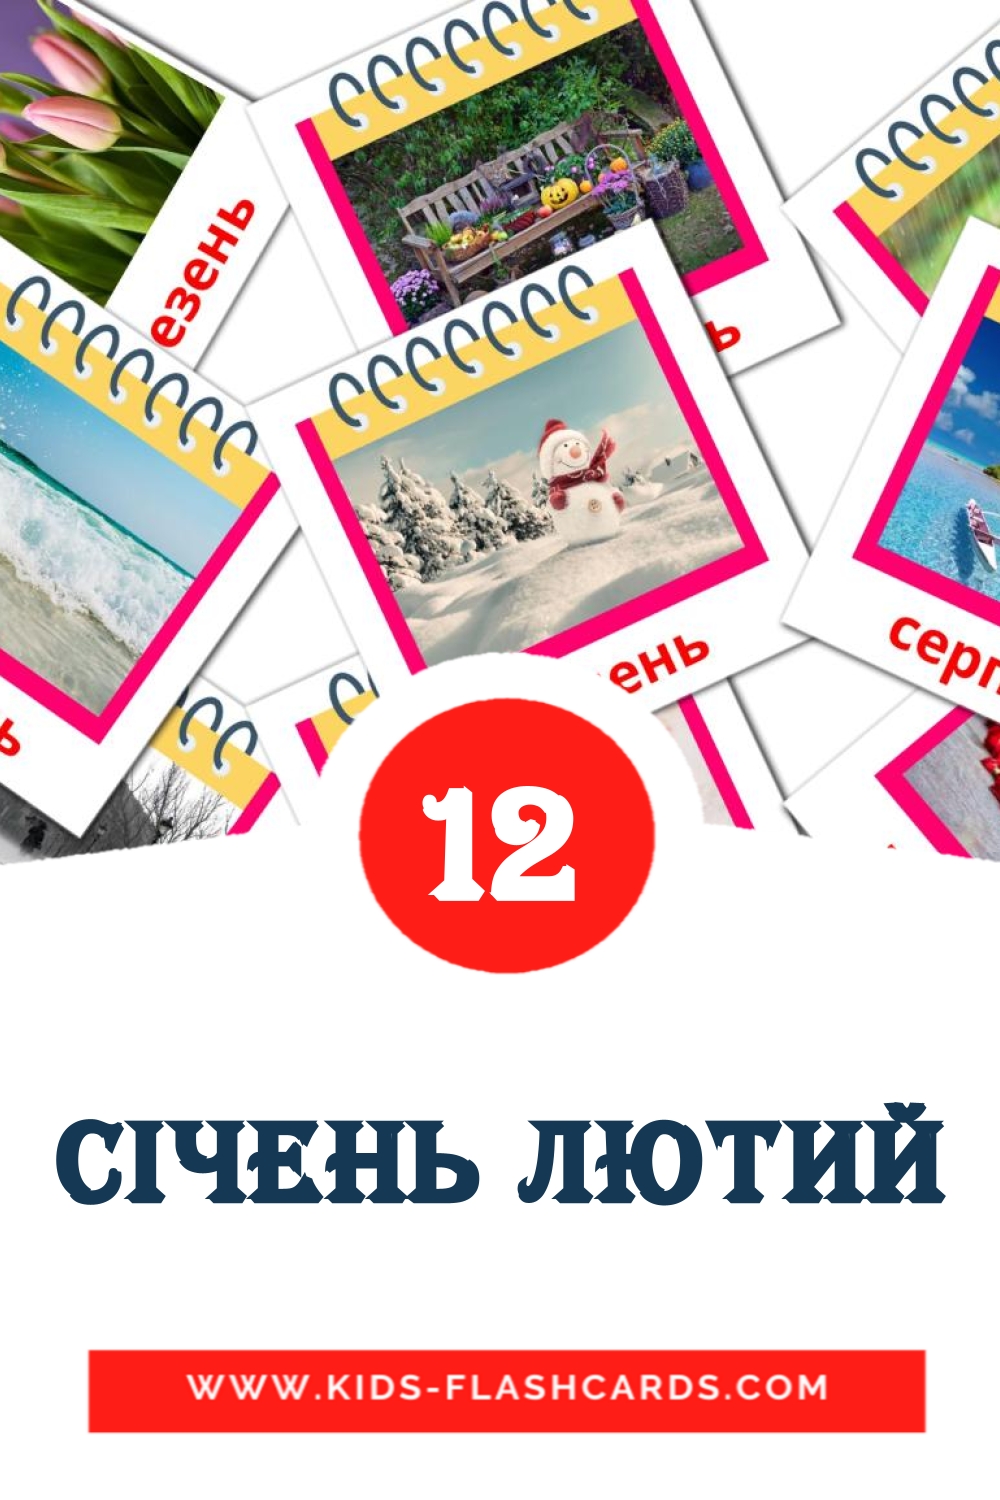 12 Cartões com Imagens de Січень лютий para Jardim de Infância em ucraniano